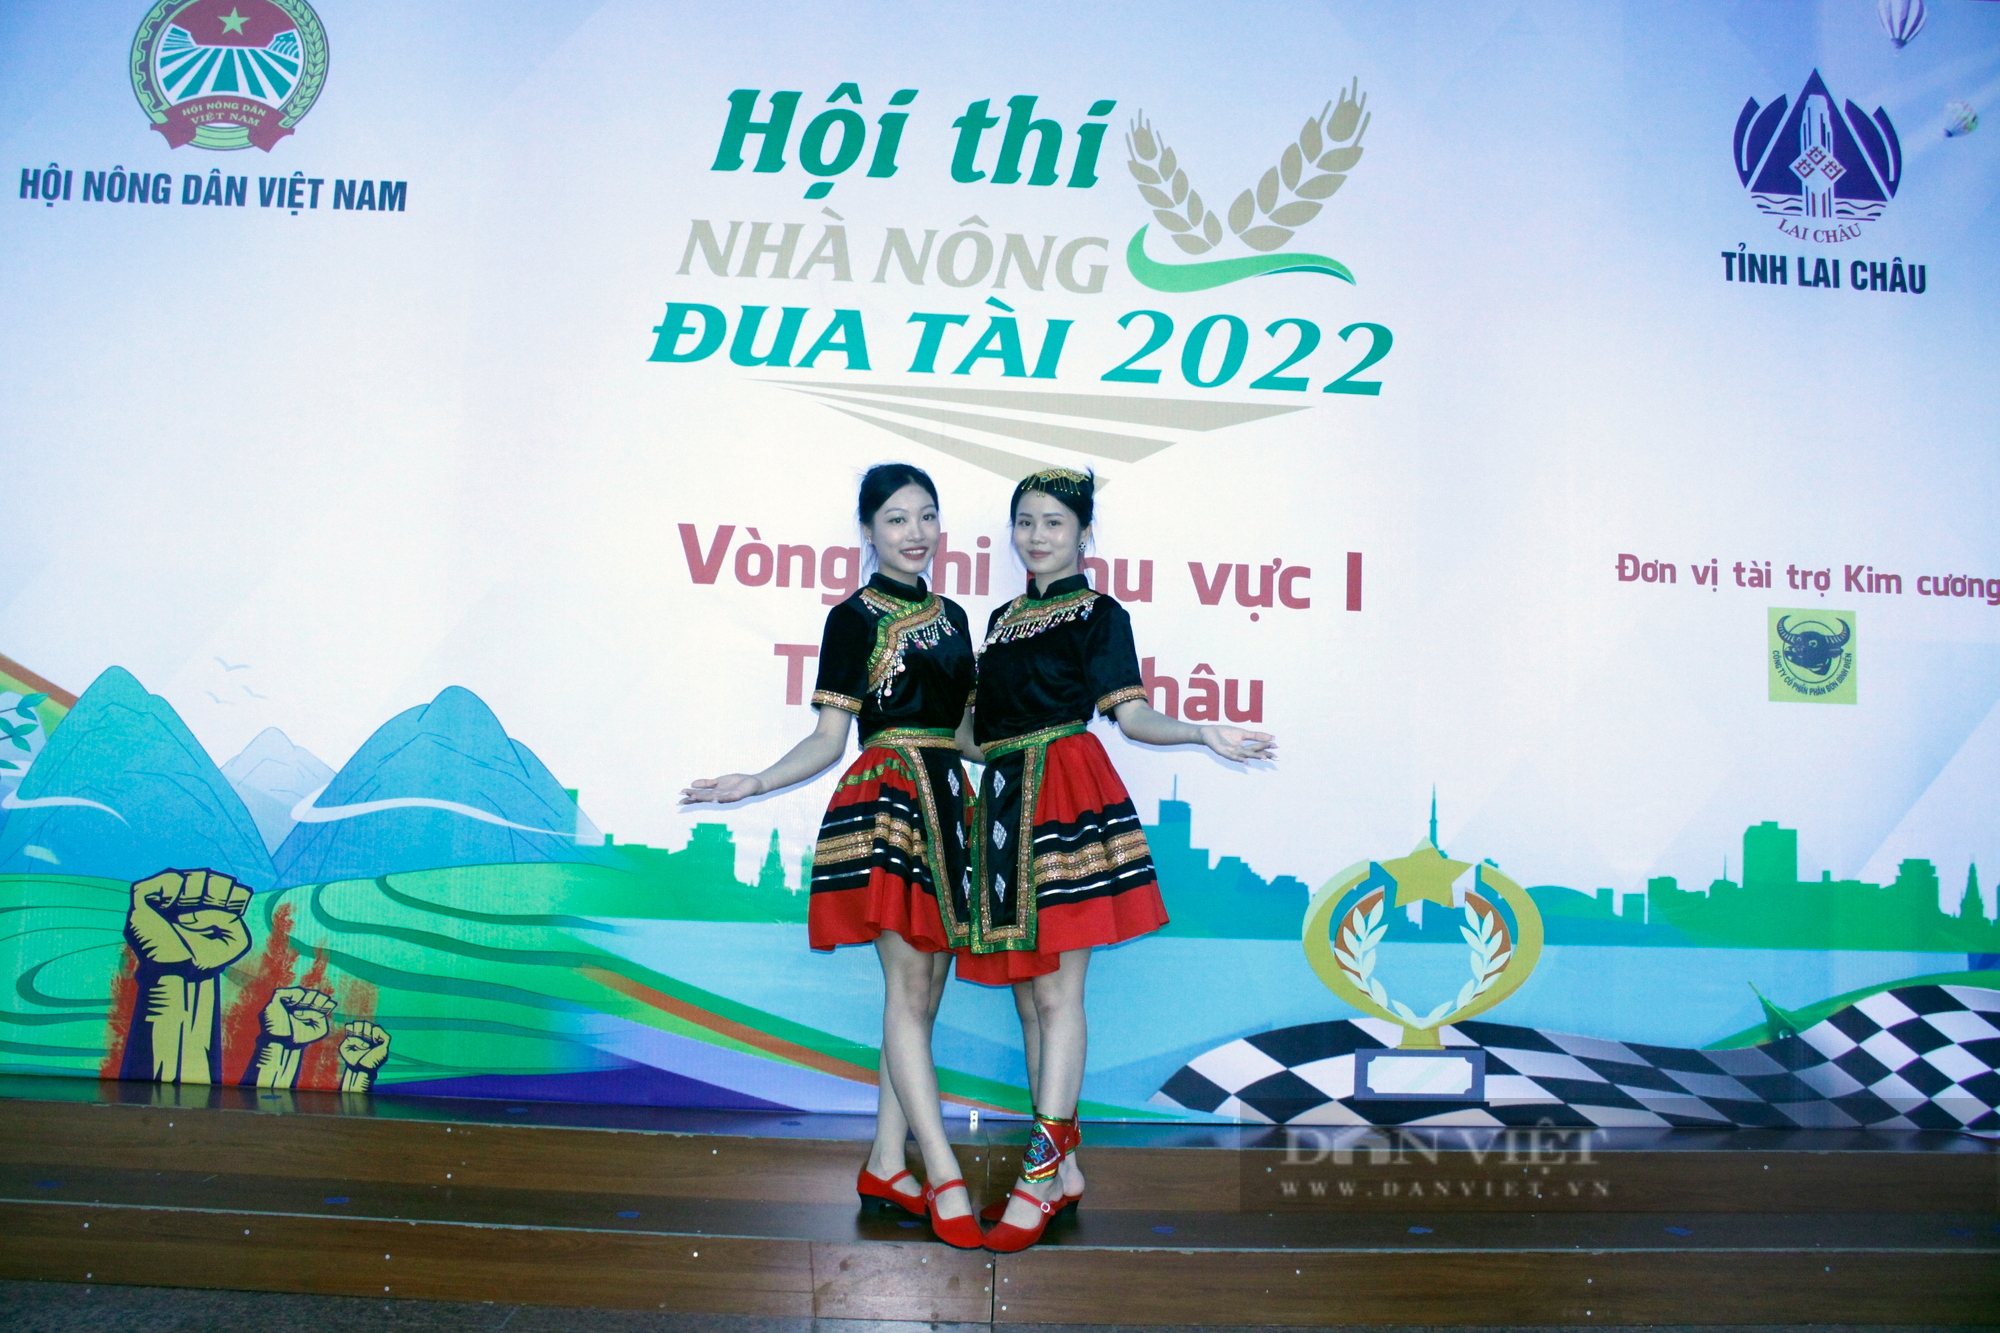 &quot;Ngắm&quot; nhan sắc của các thành viên đội thi Hội Nông dân Tuyên Quang tham gia Nhà nông đua tài đua tài, khu vực I - Ảnh 3.